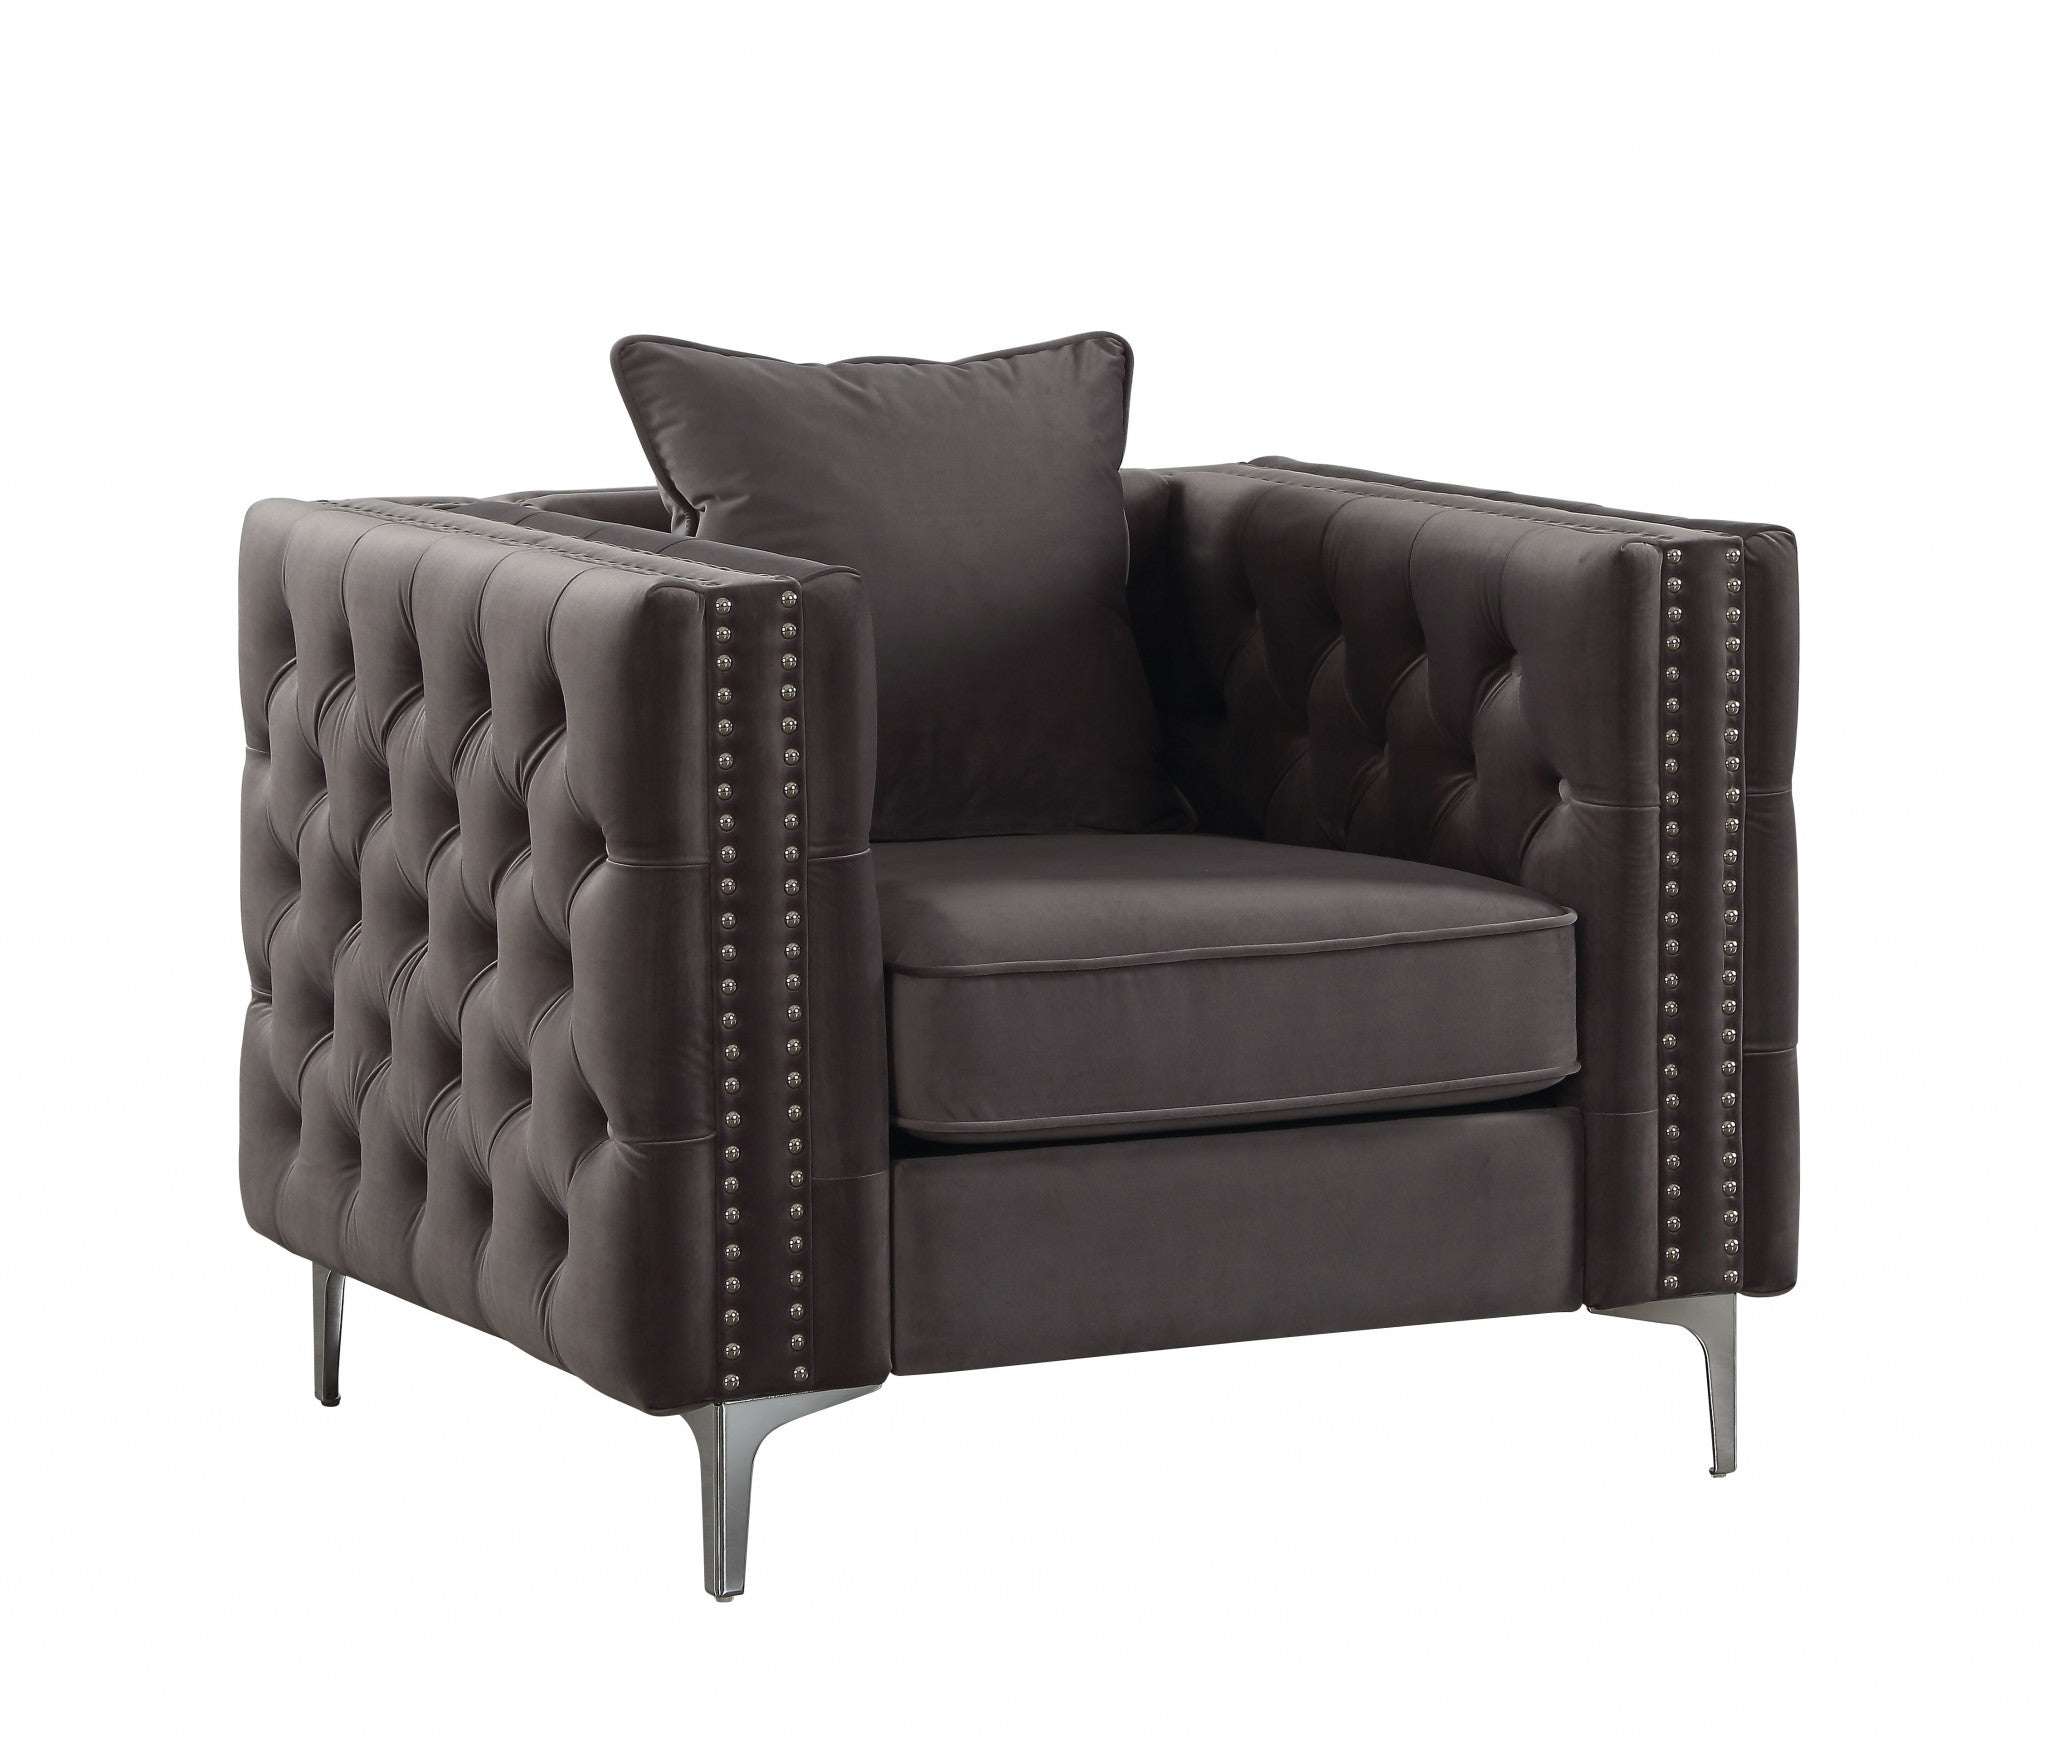 40" Dark Slate Gray And Silver Velvet Tufted Chesterfield Chair